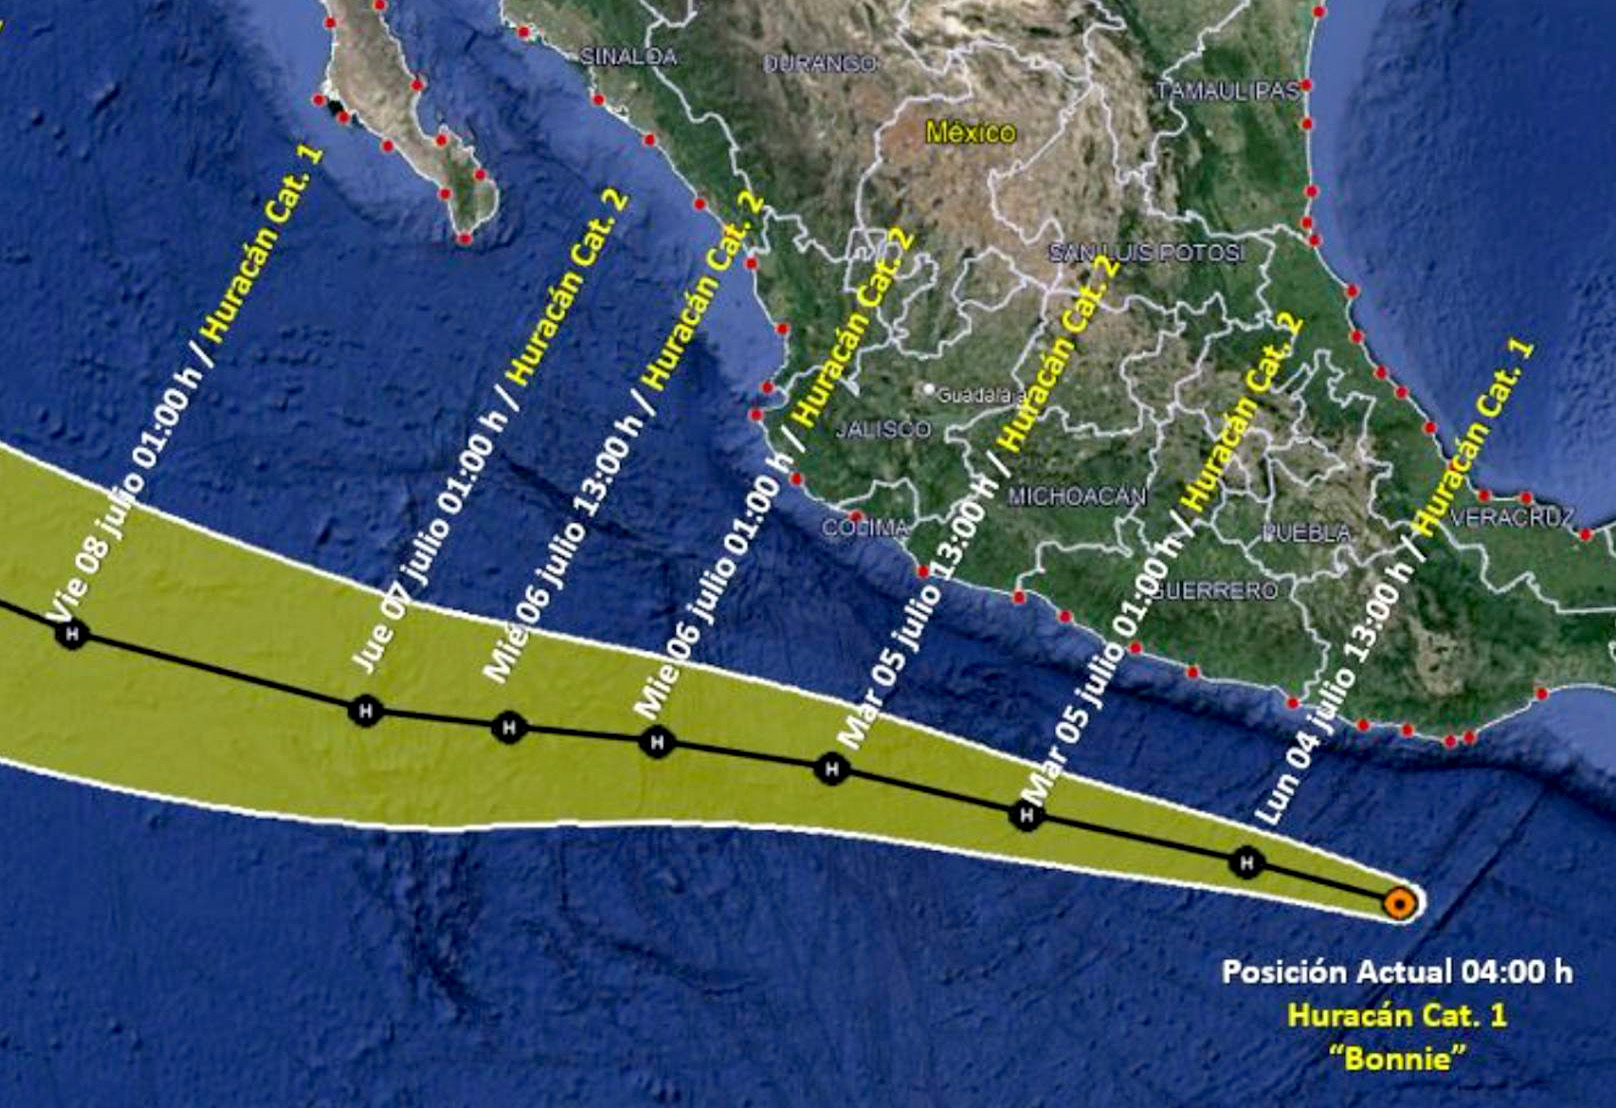 Se intensifica Bonnie a huracán categoría 1, en costas oaxaqueñas